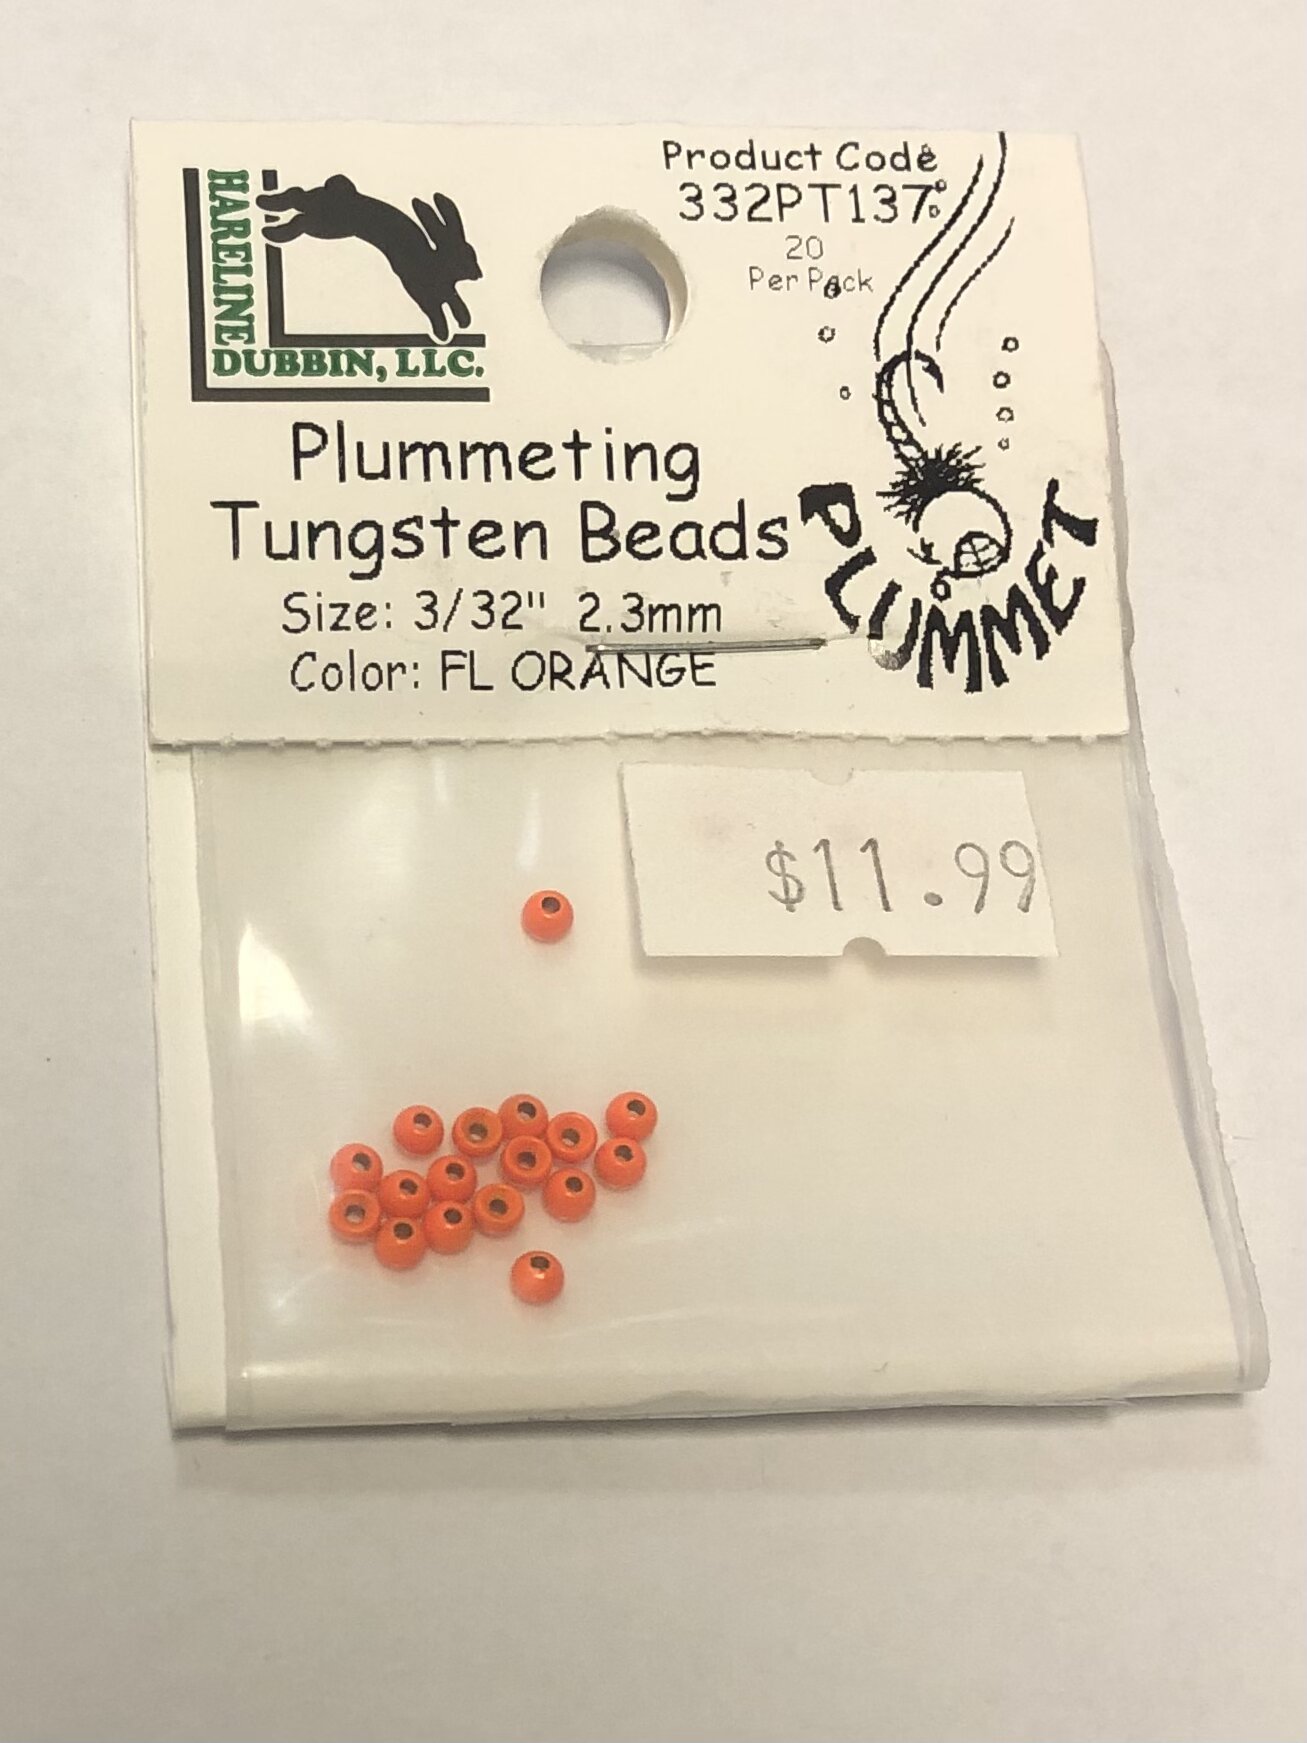 Fluorescent Orange Tungsten Tungsten Bead 20/PKG - 3/32